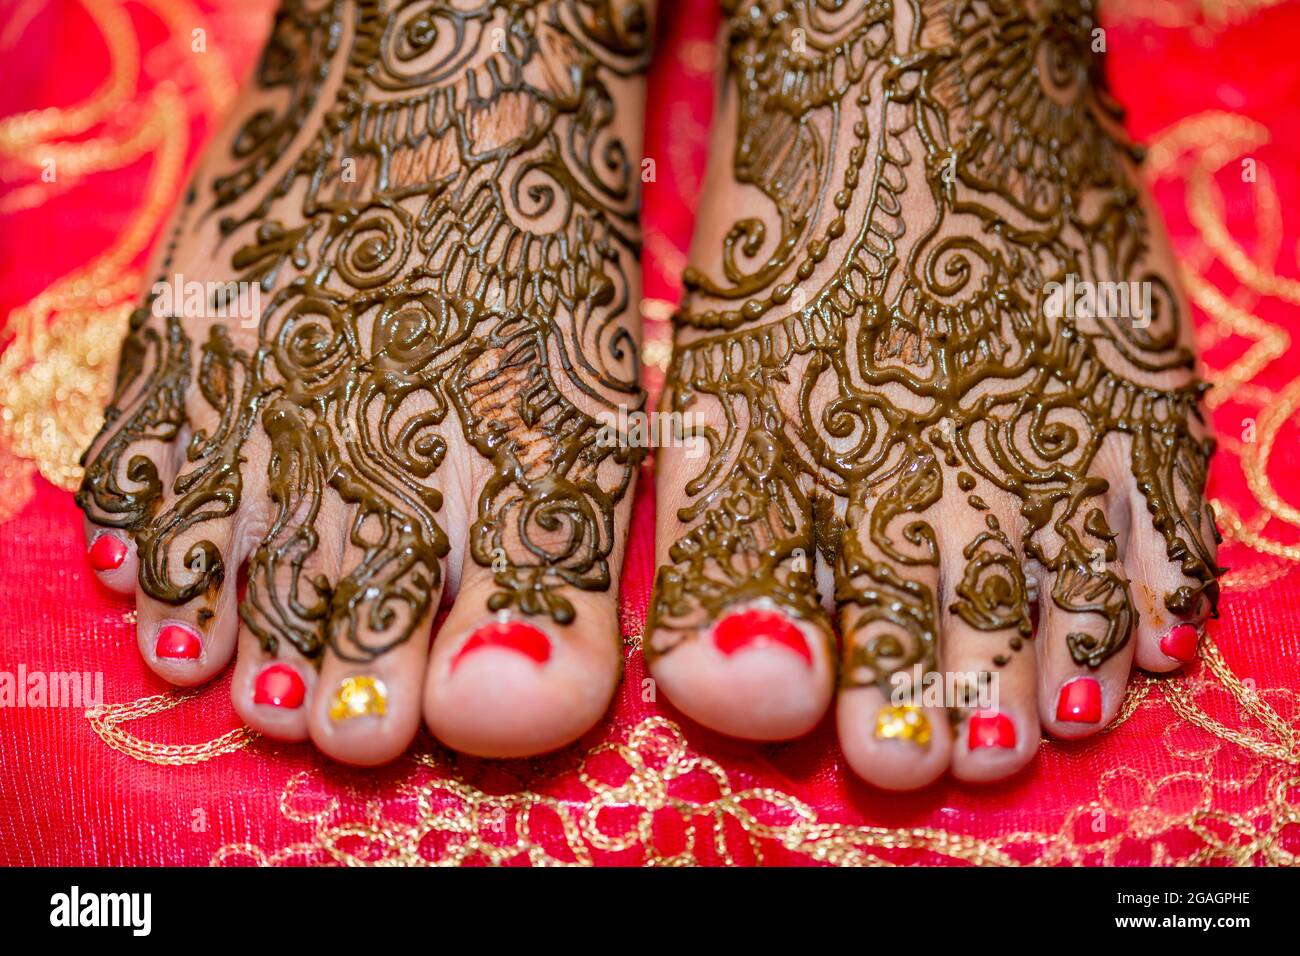 hennè sui piedi della sposa nel suo giorno di nozze Foto Stock